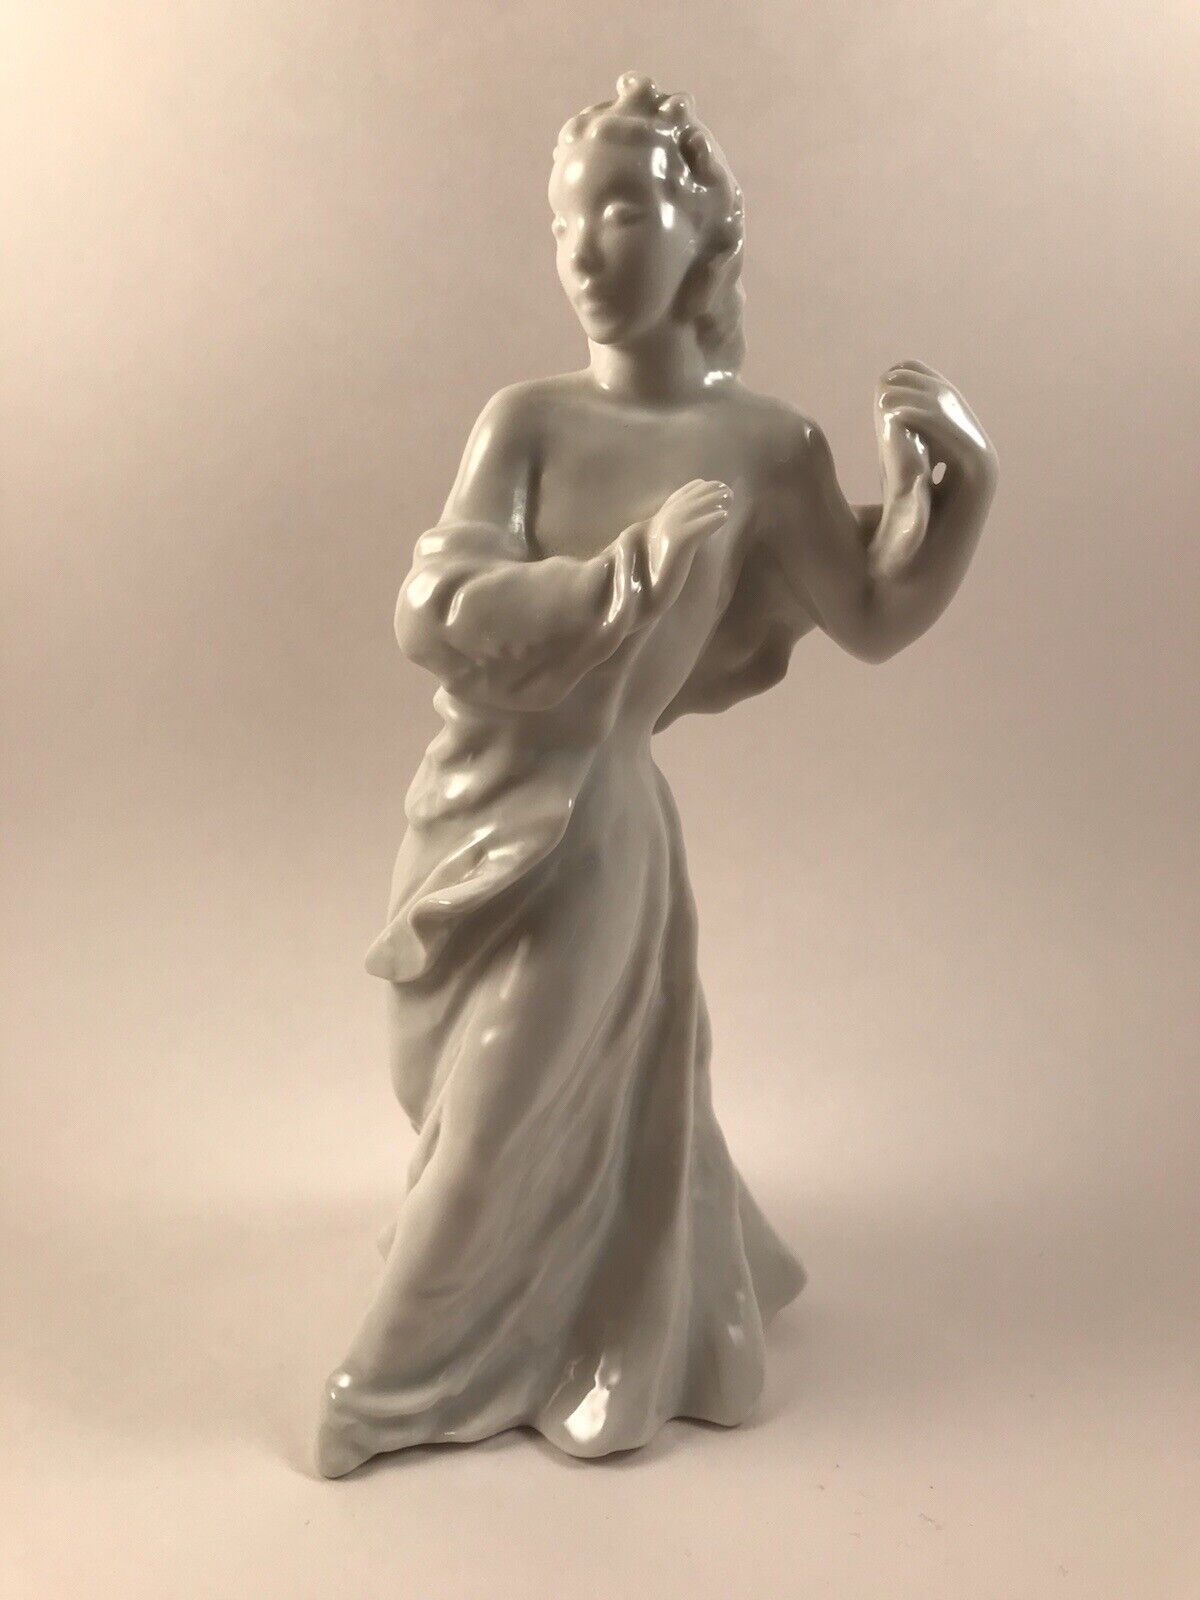 Rosenthal Porcelain Figurine 1933 Adagio by L. Friedrich Gronau 7” Tall White